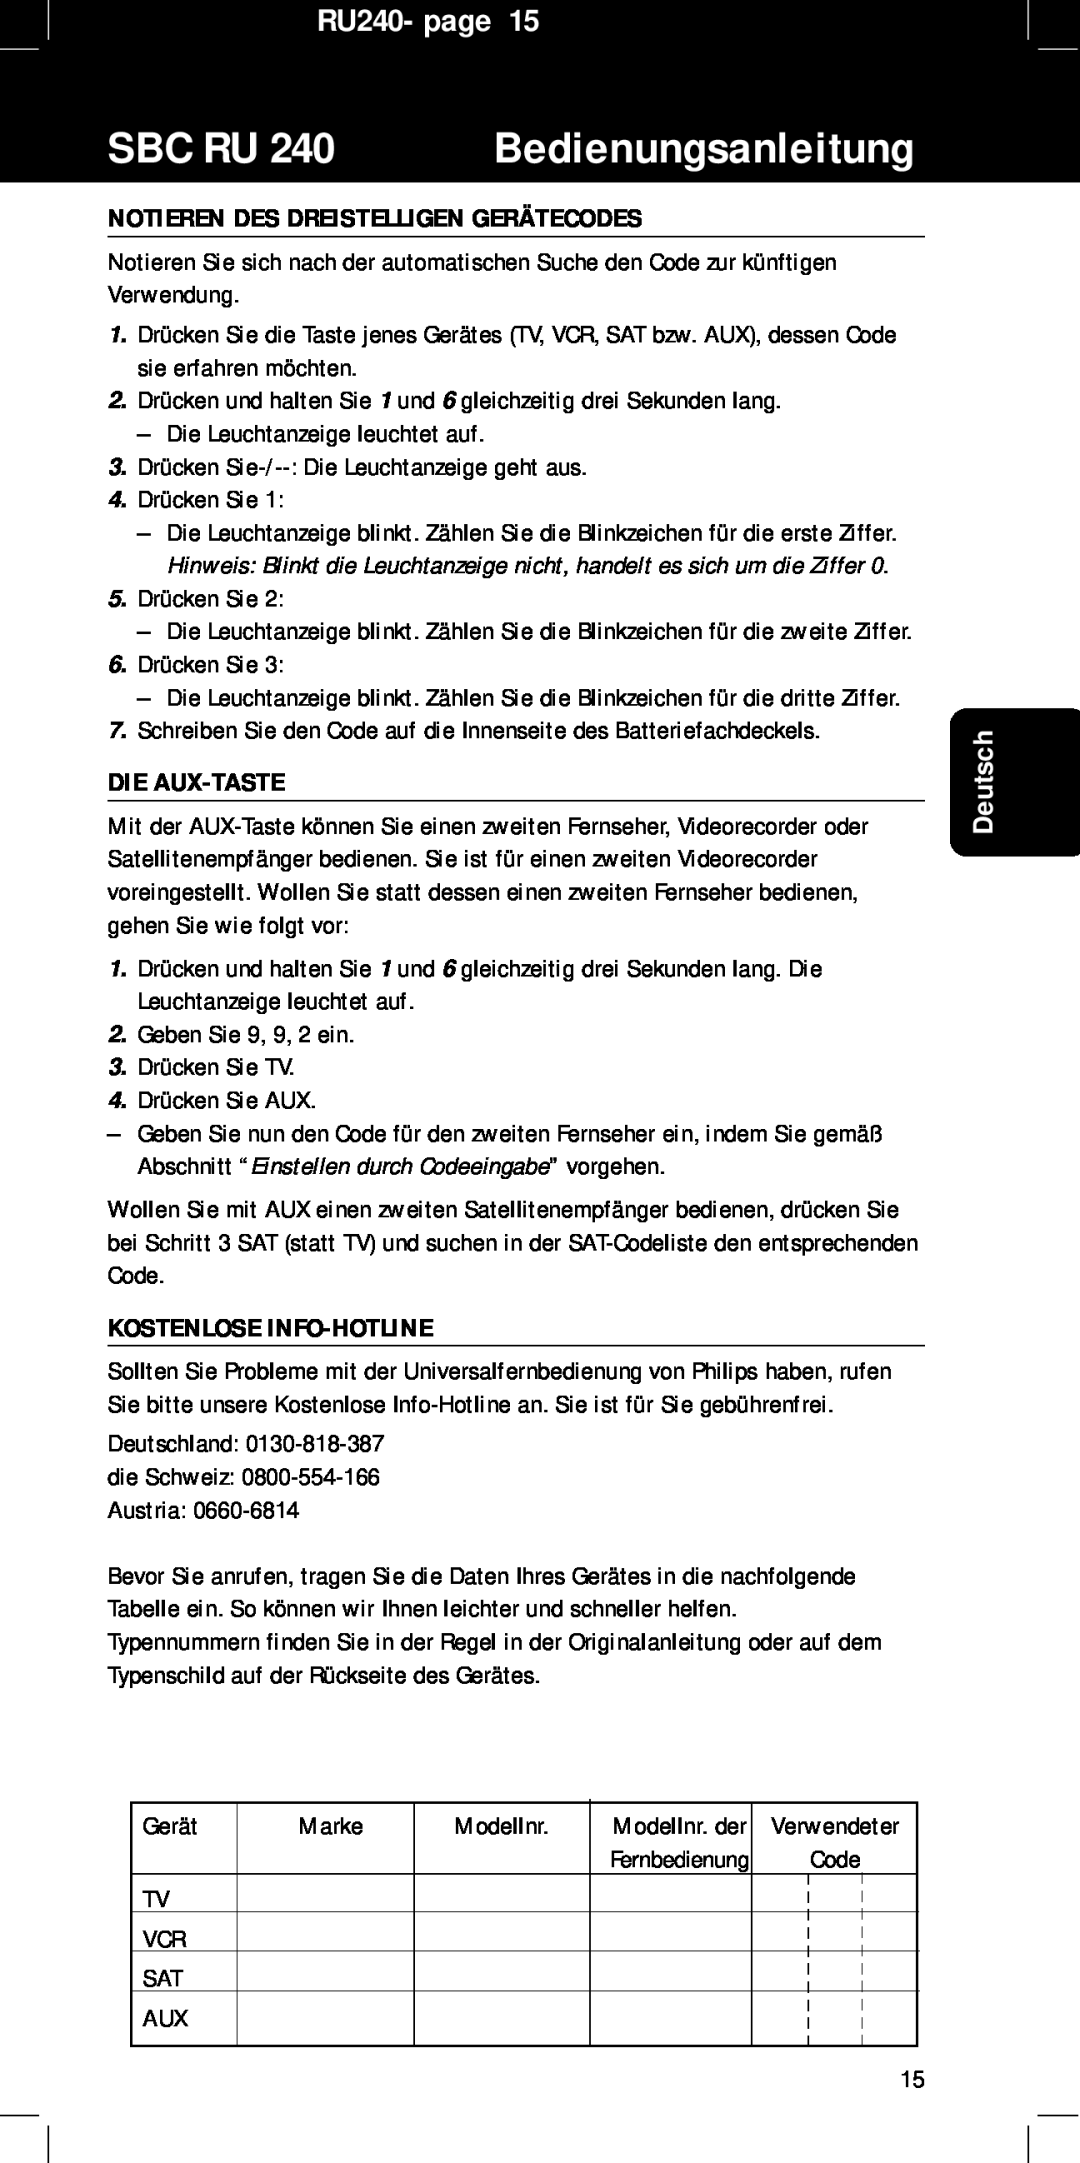 Philips RU240 Notieren Des Dreistelligen Gerätecodes, Die Aux-Taste, Kostenlose Info-Hotline, Sbc Ru, Bedienungsanleitung 